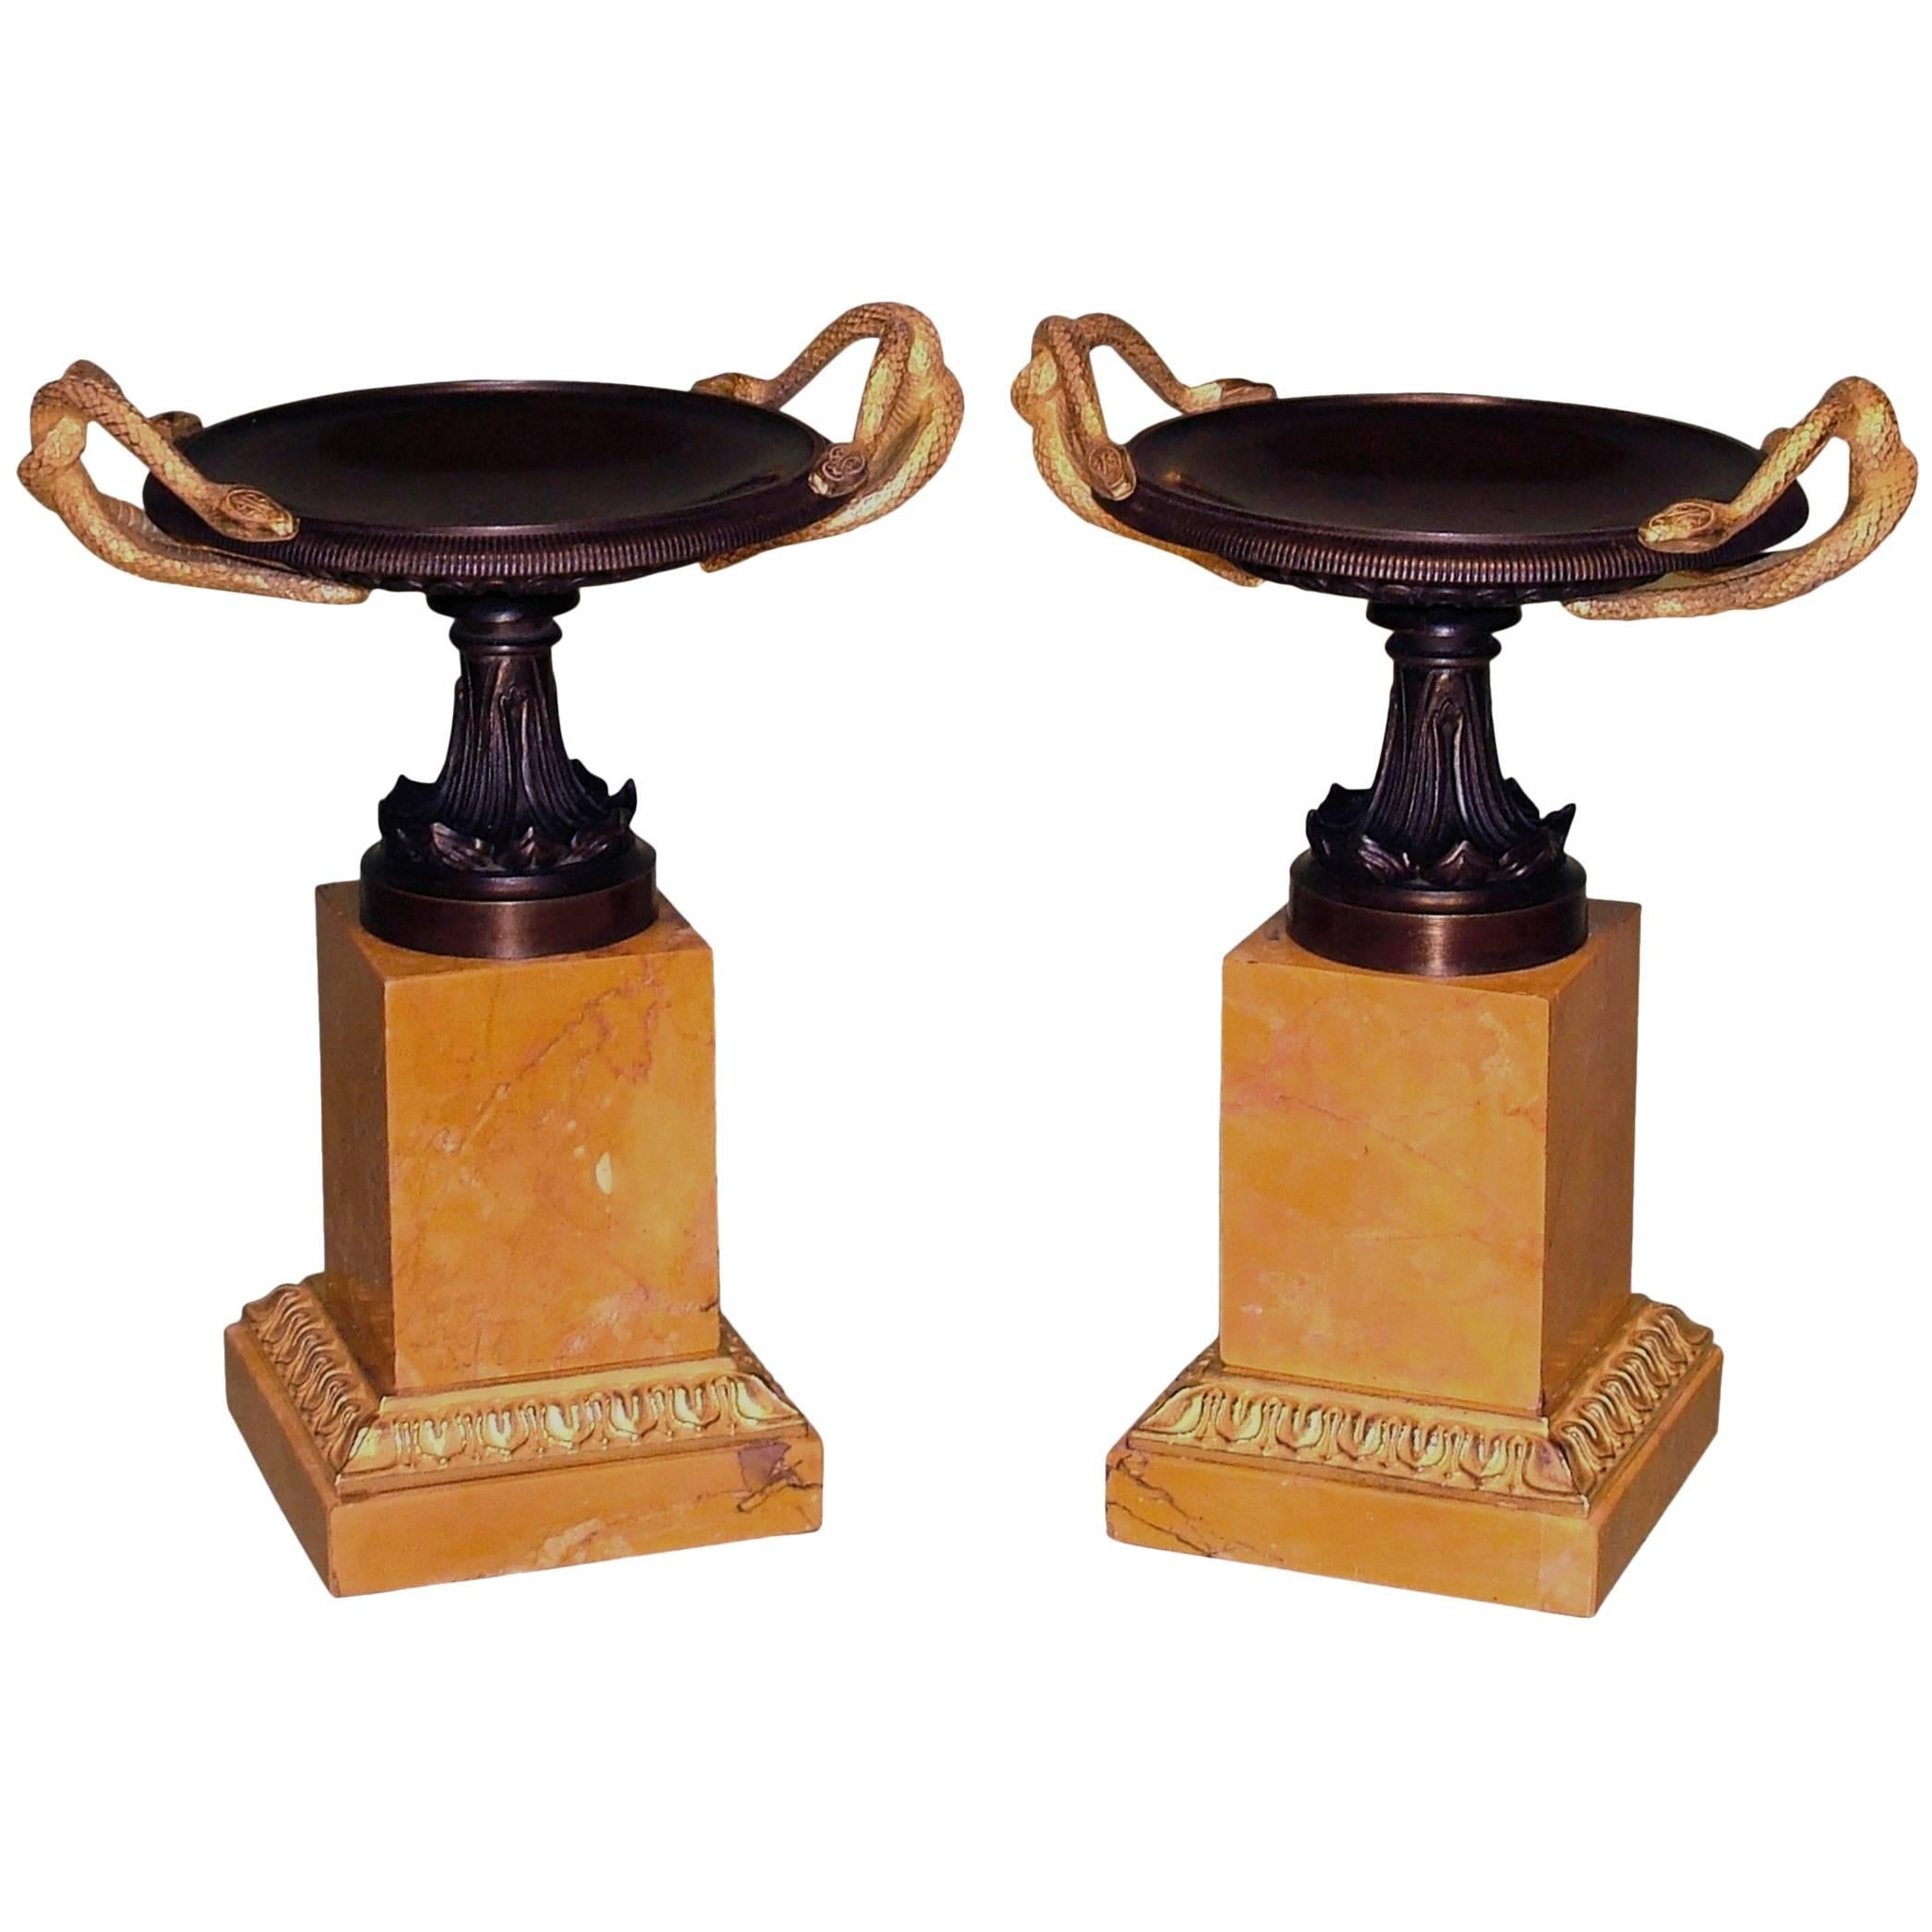 Grande paire de tazzas en bronze et bronze doré du début du XIXe siècle